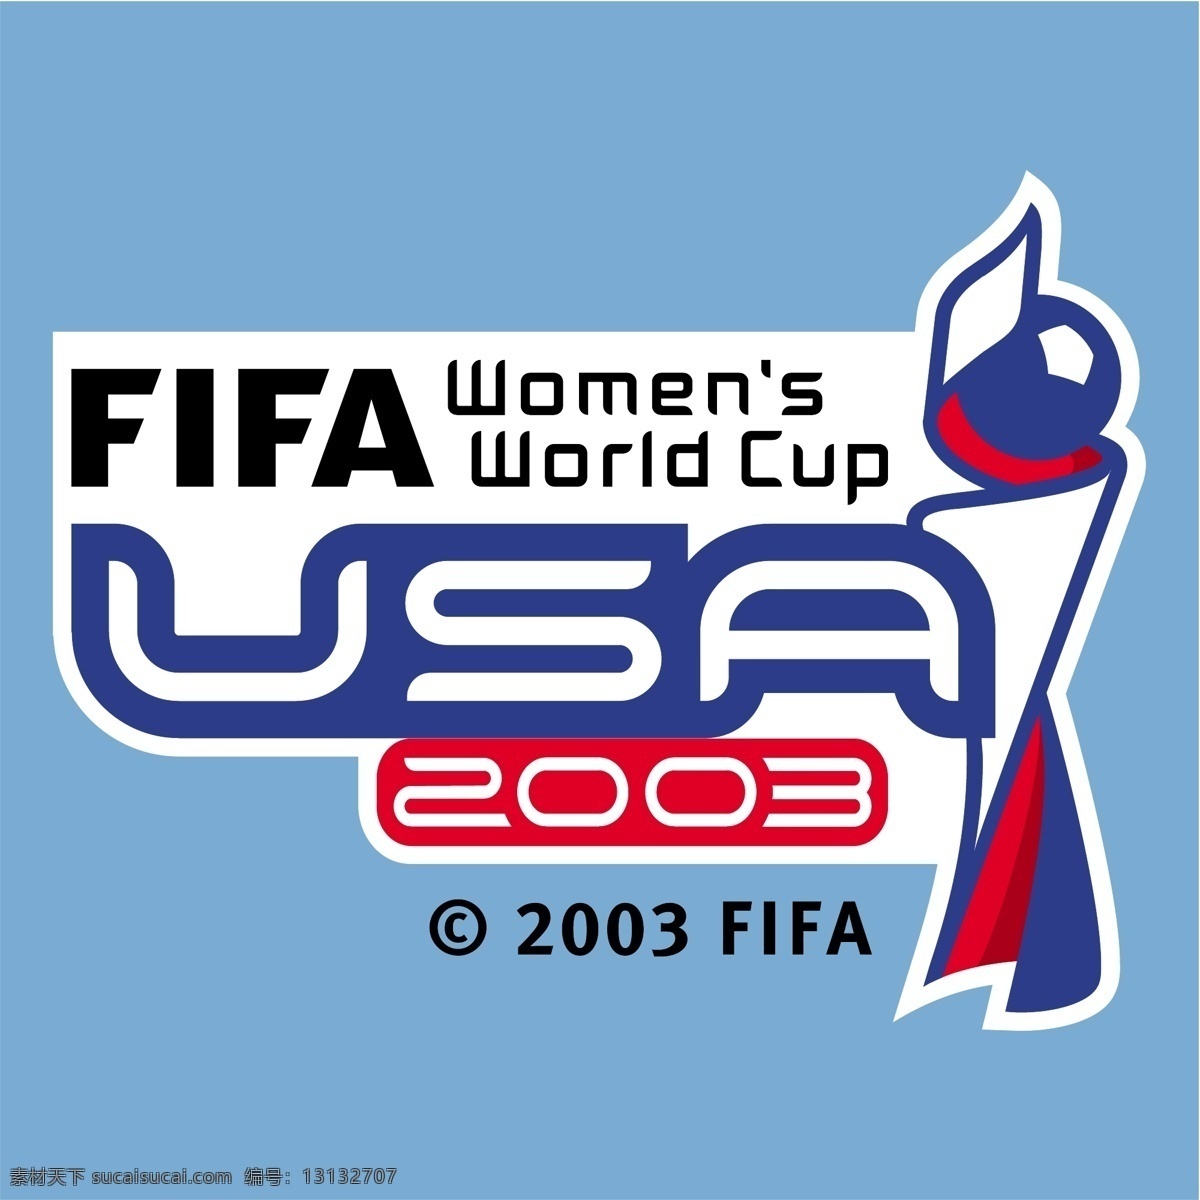 国际足联 女足 世界杯 2003 美国 世界 女厕所 矢量图 其他矢量图